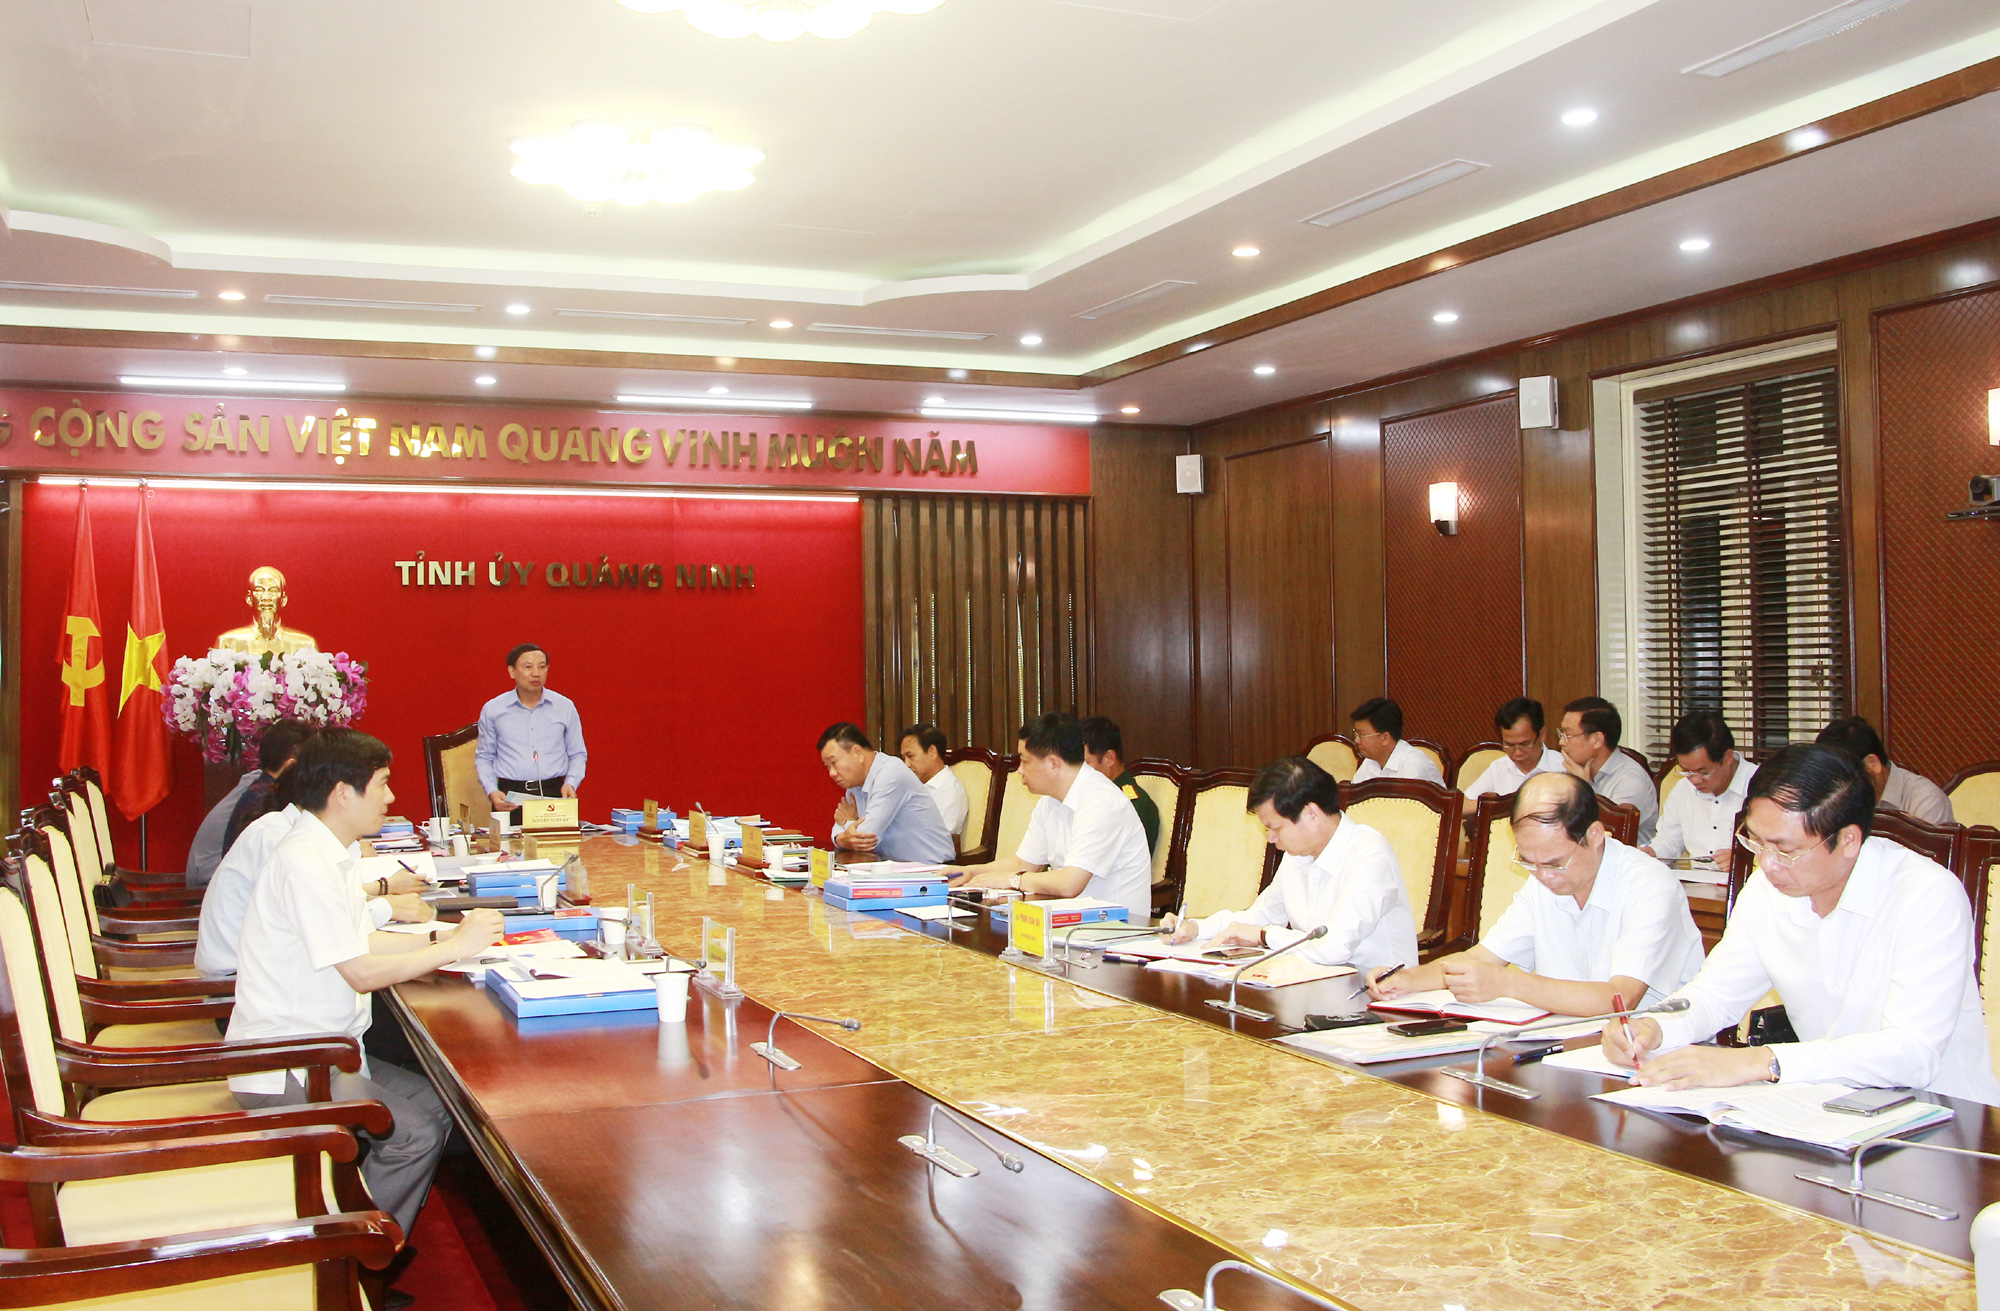 Đồng chí Nguyễn Xuân Ký, Bí thư Tỉnh ủy, Chủ tịch HĐND tỉnh, phát biểu kết luận buổi làm việc với BTV Huyện ủy Hải Hà.